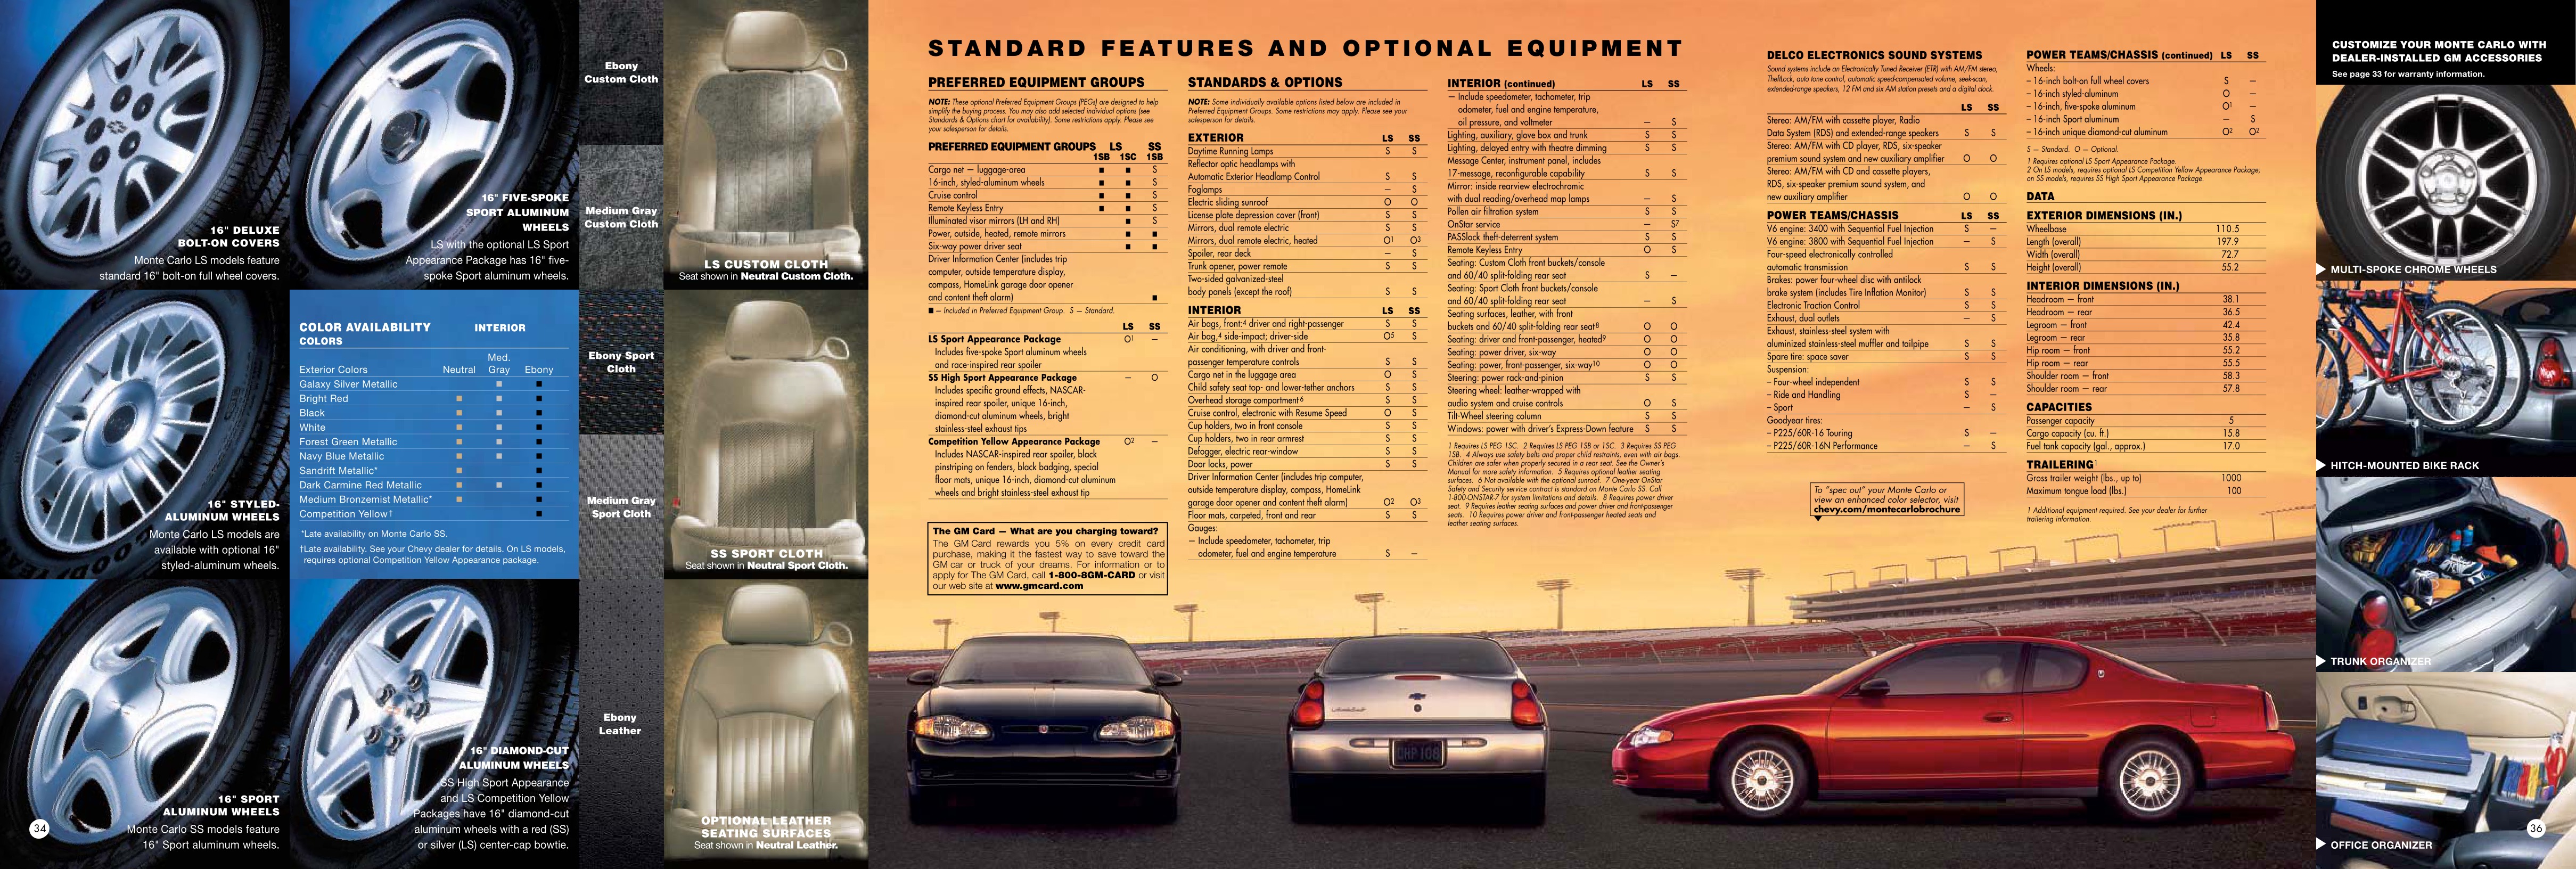 2002 Chevrolet Monte Carlo Brochure Page 7